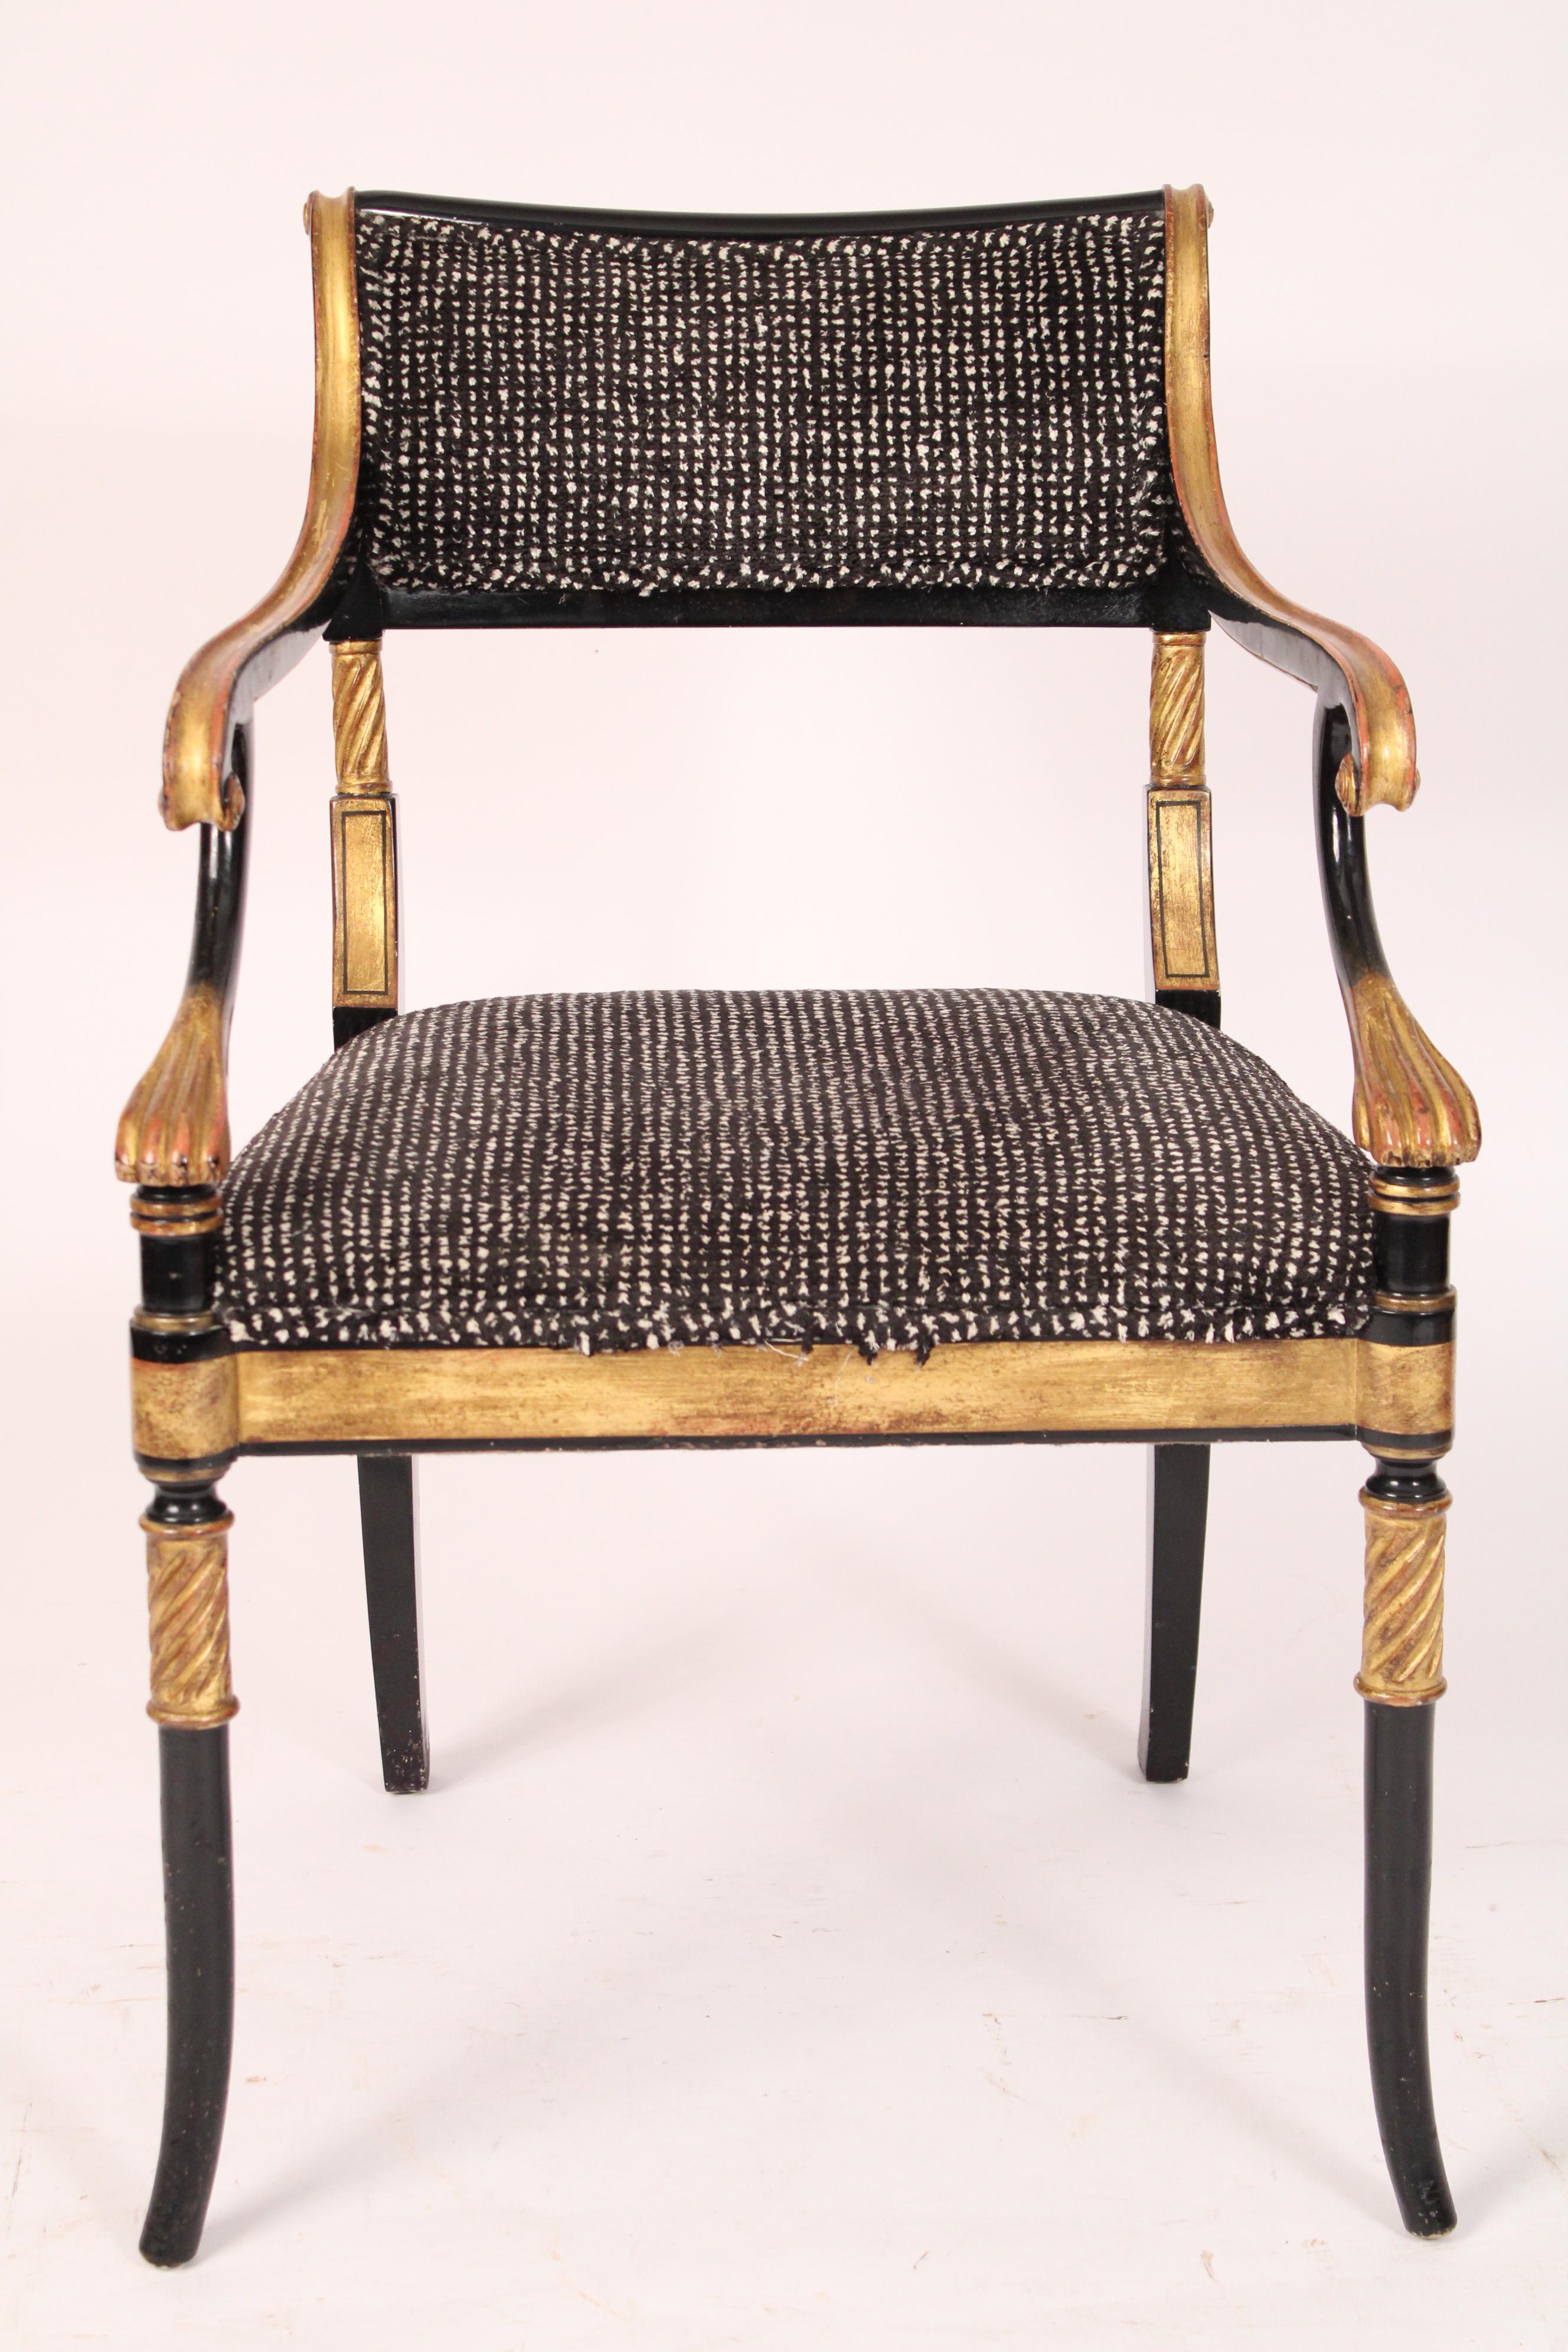 Englischer Sessel im Regency-Stil mit schwarzem Lack und Goldverzierung, Ende des 20. Jahrhunderts. Die Sitzmaße sind: Sitzbreite 18,5